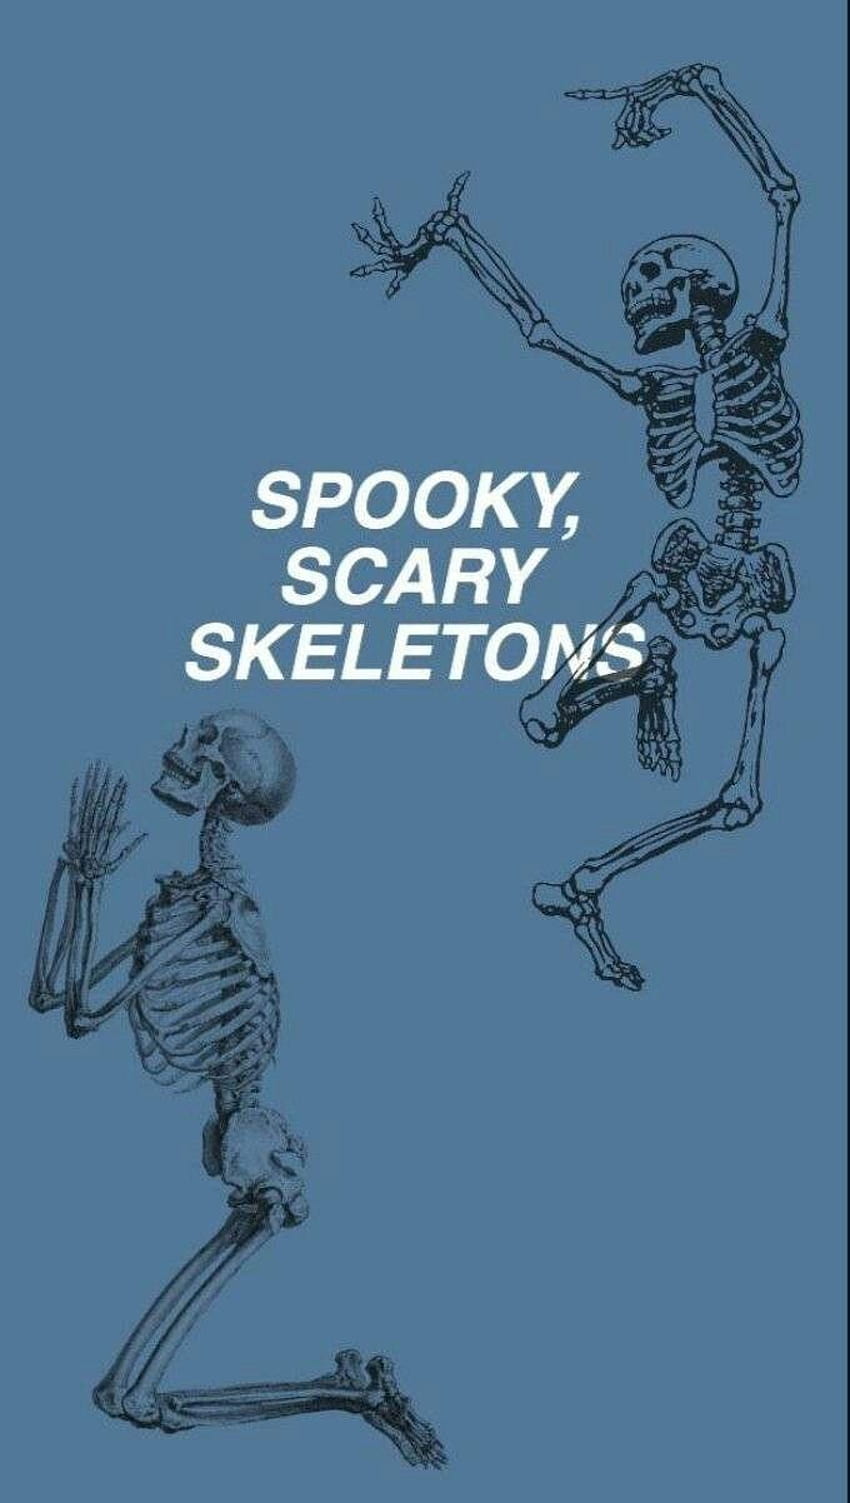 garrett duane on in 2019, spooky scary skeletons HD phone wallpaper